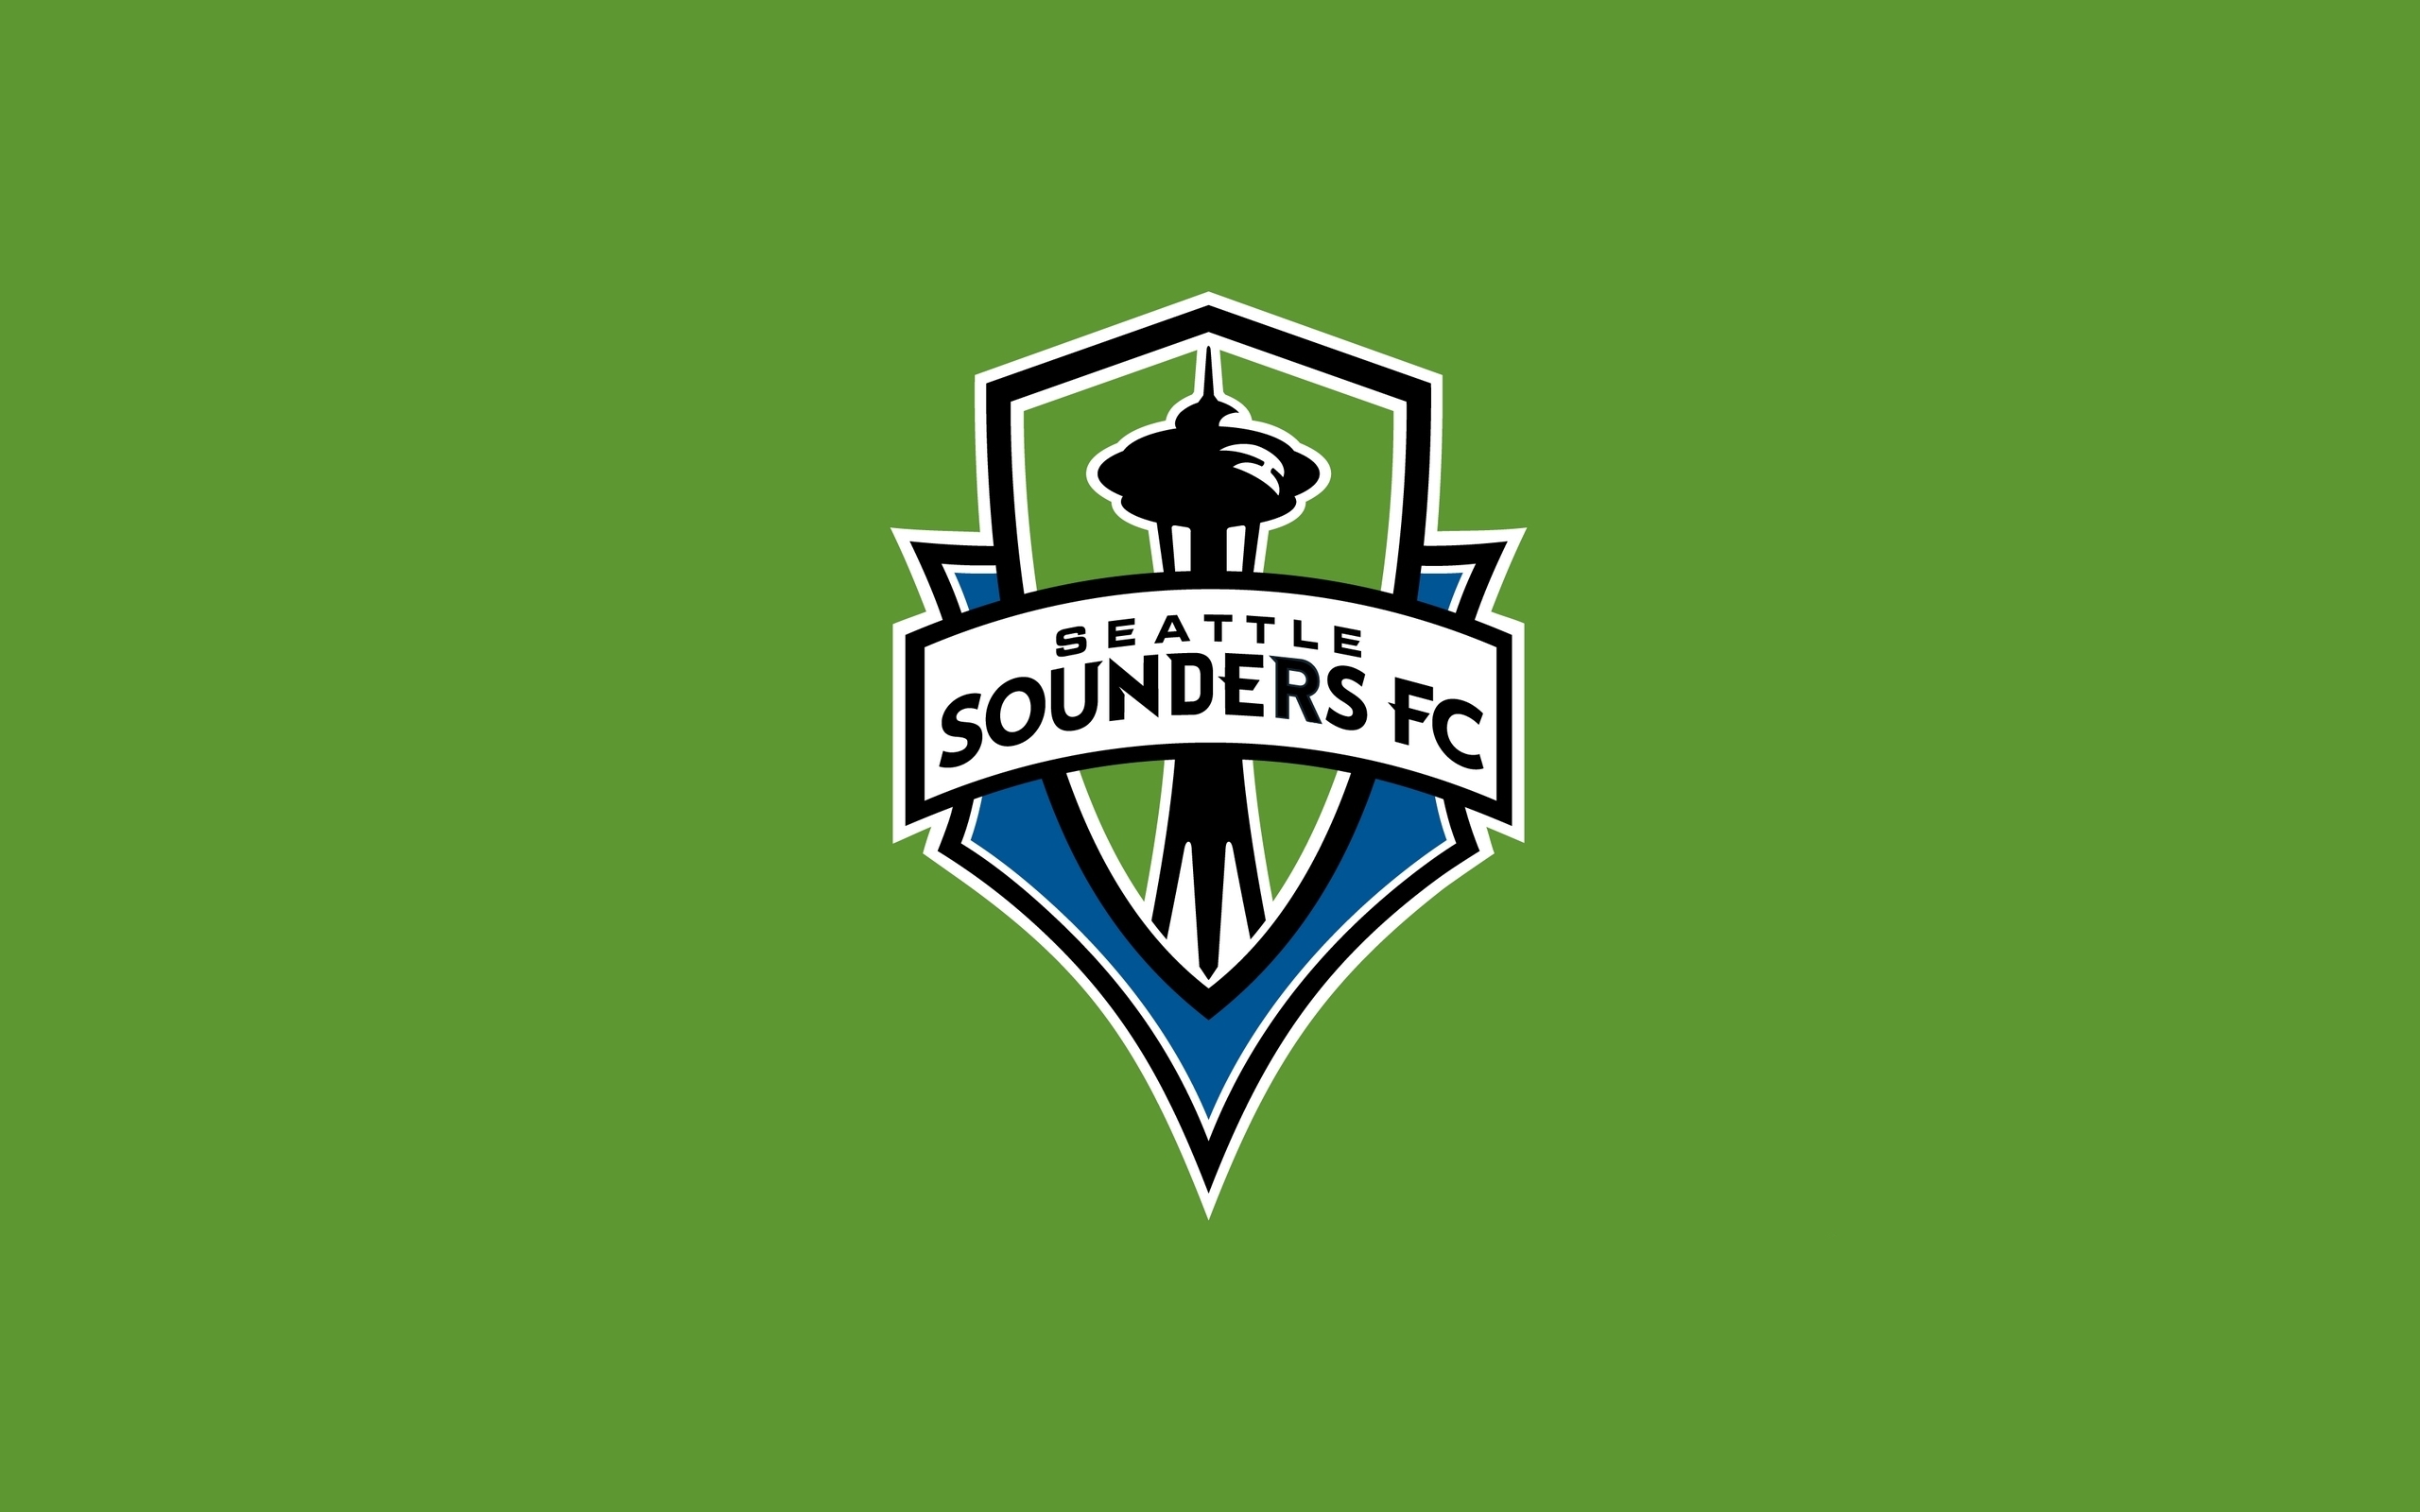 Seattle Sounders Fc Logo